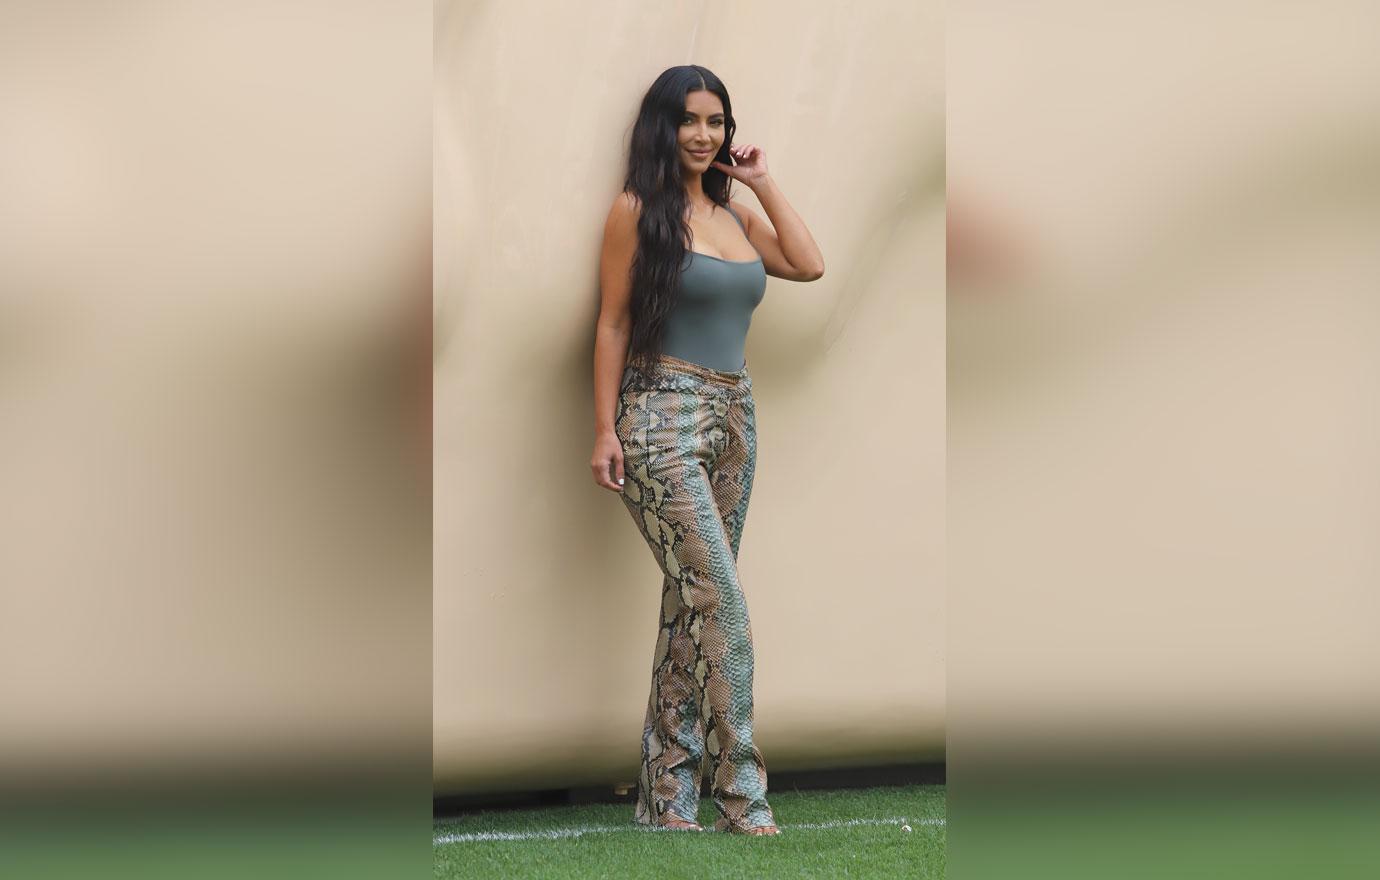 Kim Kardashian Rocks Snakeskin Pants At Her Skims Pop-Up Shop: Photos